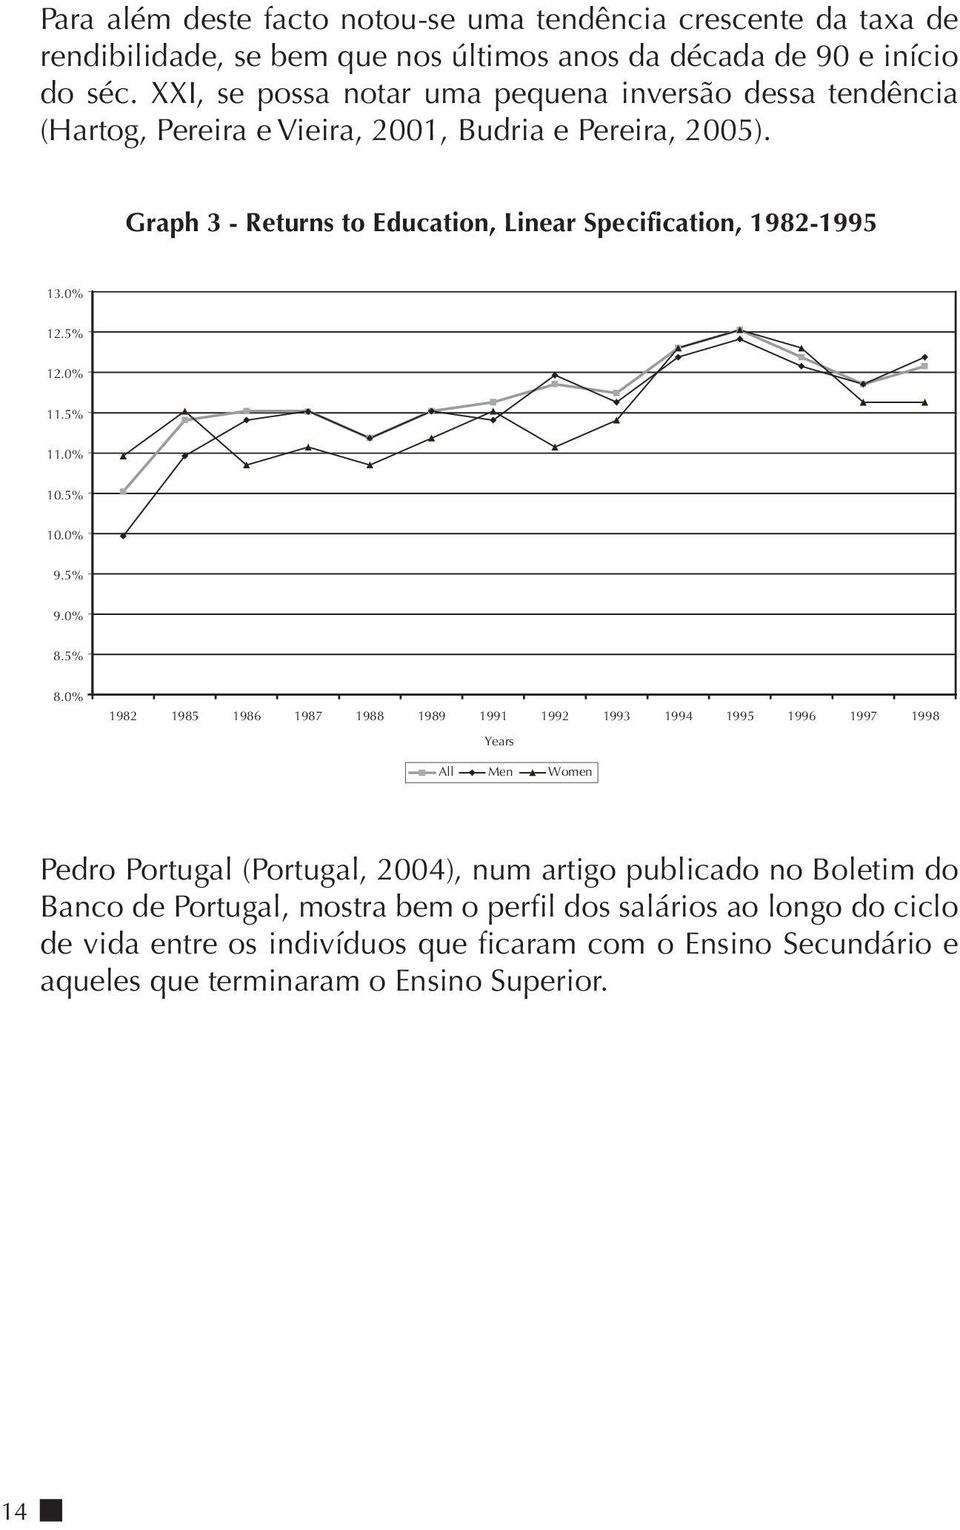 XXI, se possa notar uma pequena inversão dessa tendência (Hartog, Pereira e Vieira, 2001, Budria e Pereira, 2005).